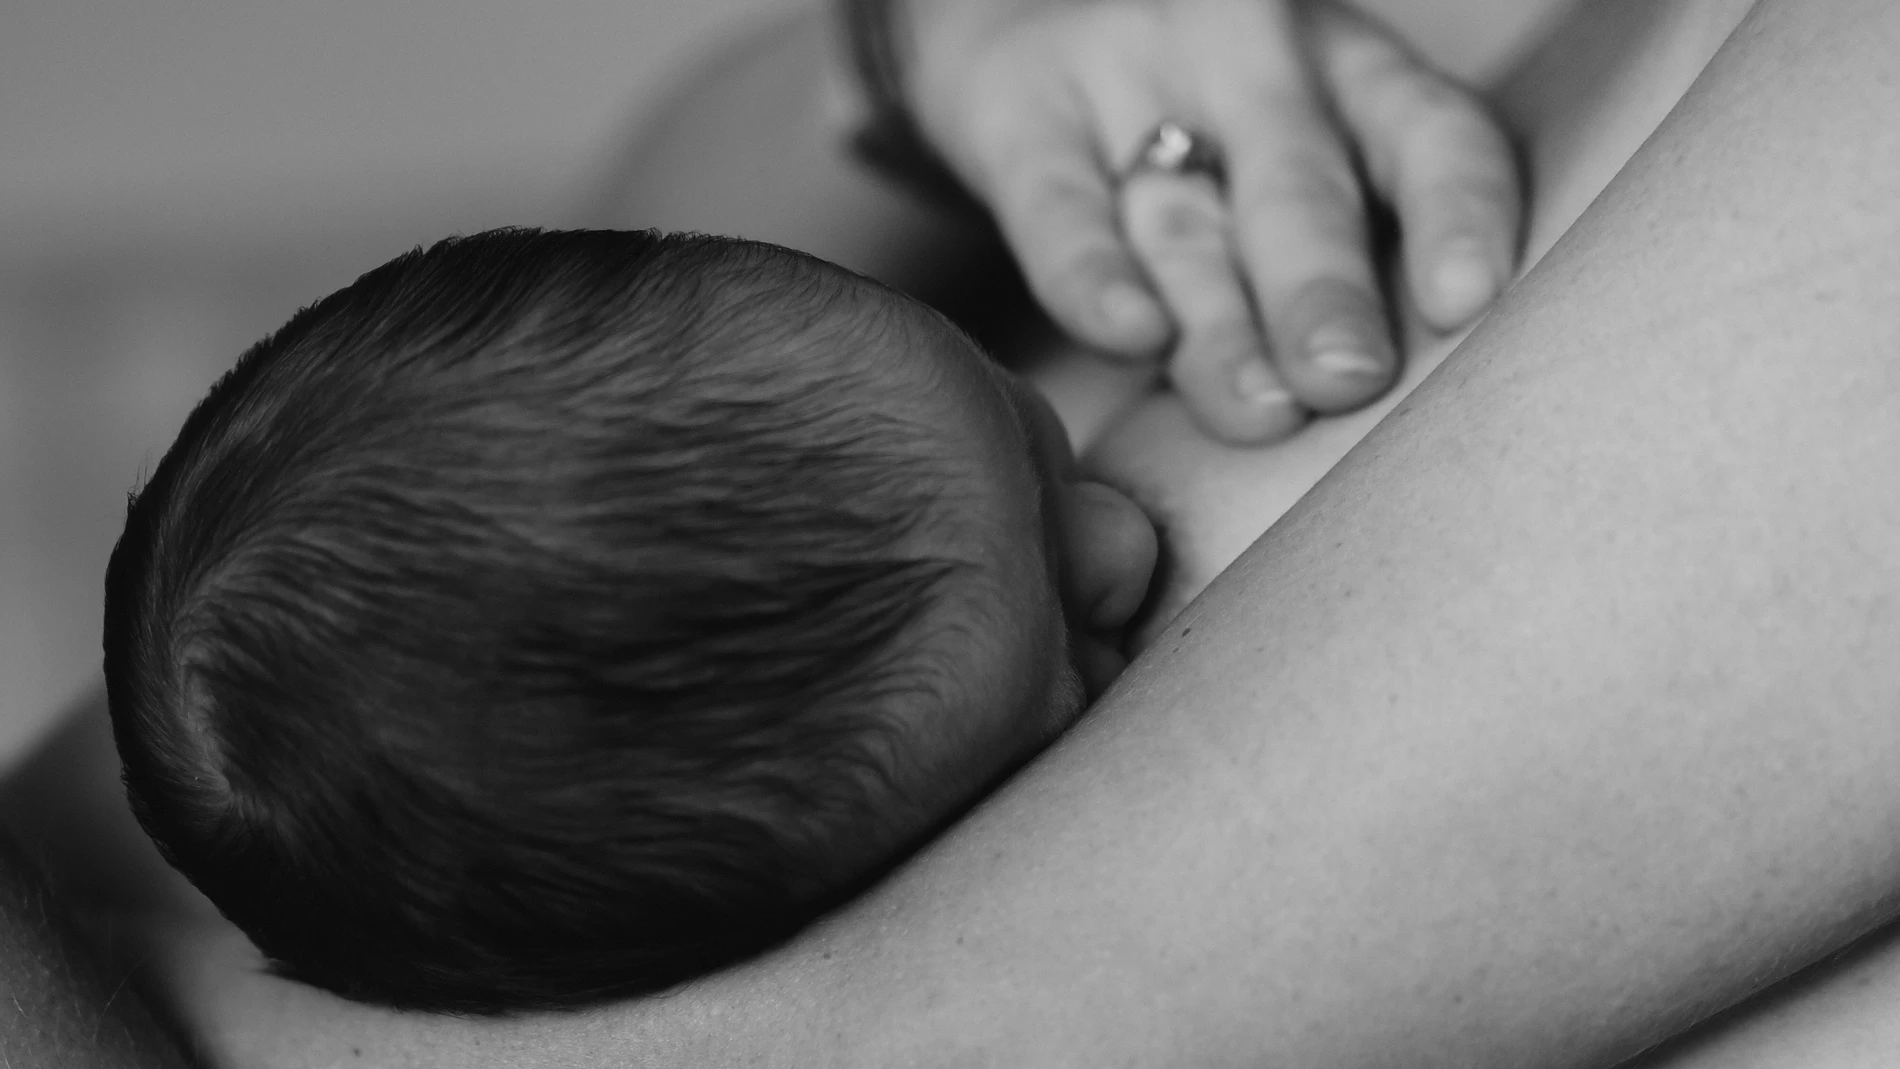 Lactancia materna: 10 beneficios  Tesoros de vida – TESOROS DE VIDA